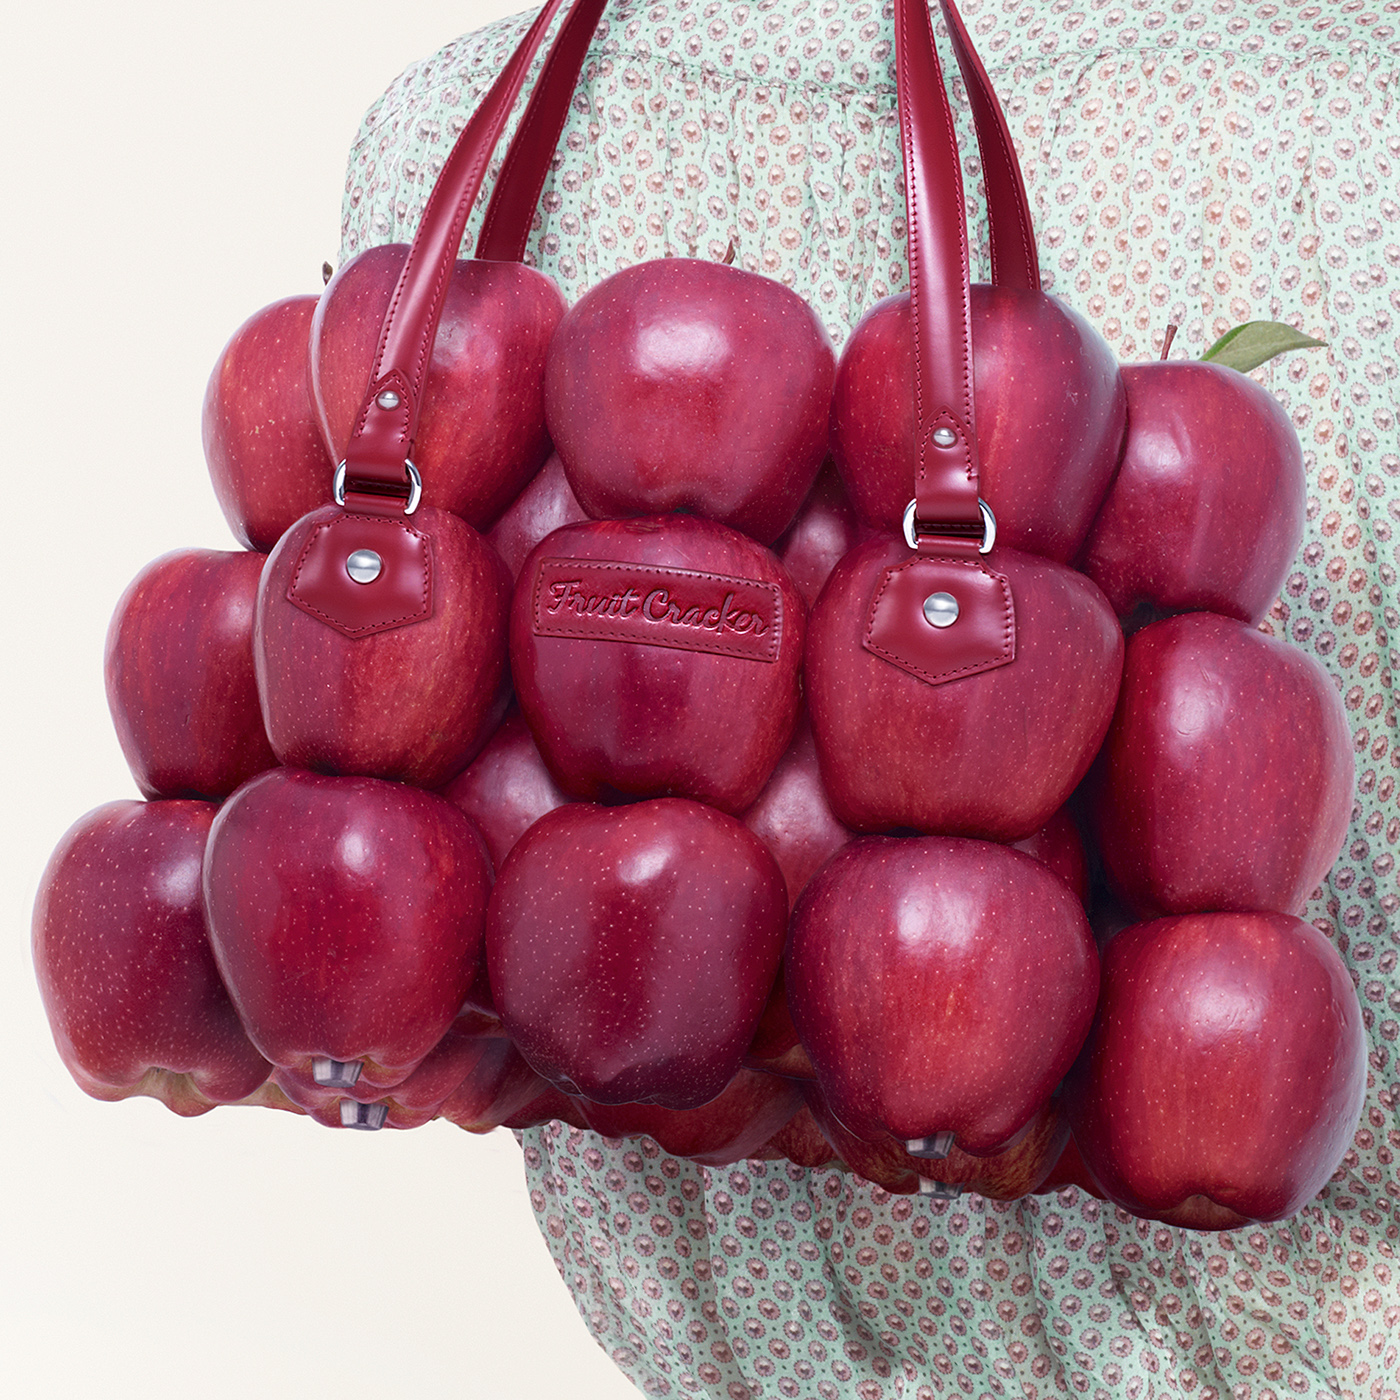 Fruit Cracker Fruit snack print bag Fulvio Bonavia apple red fruit goodness inspire